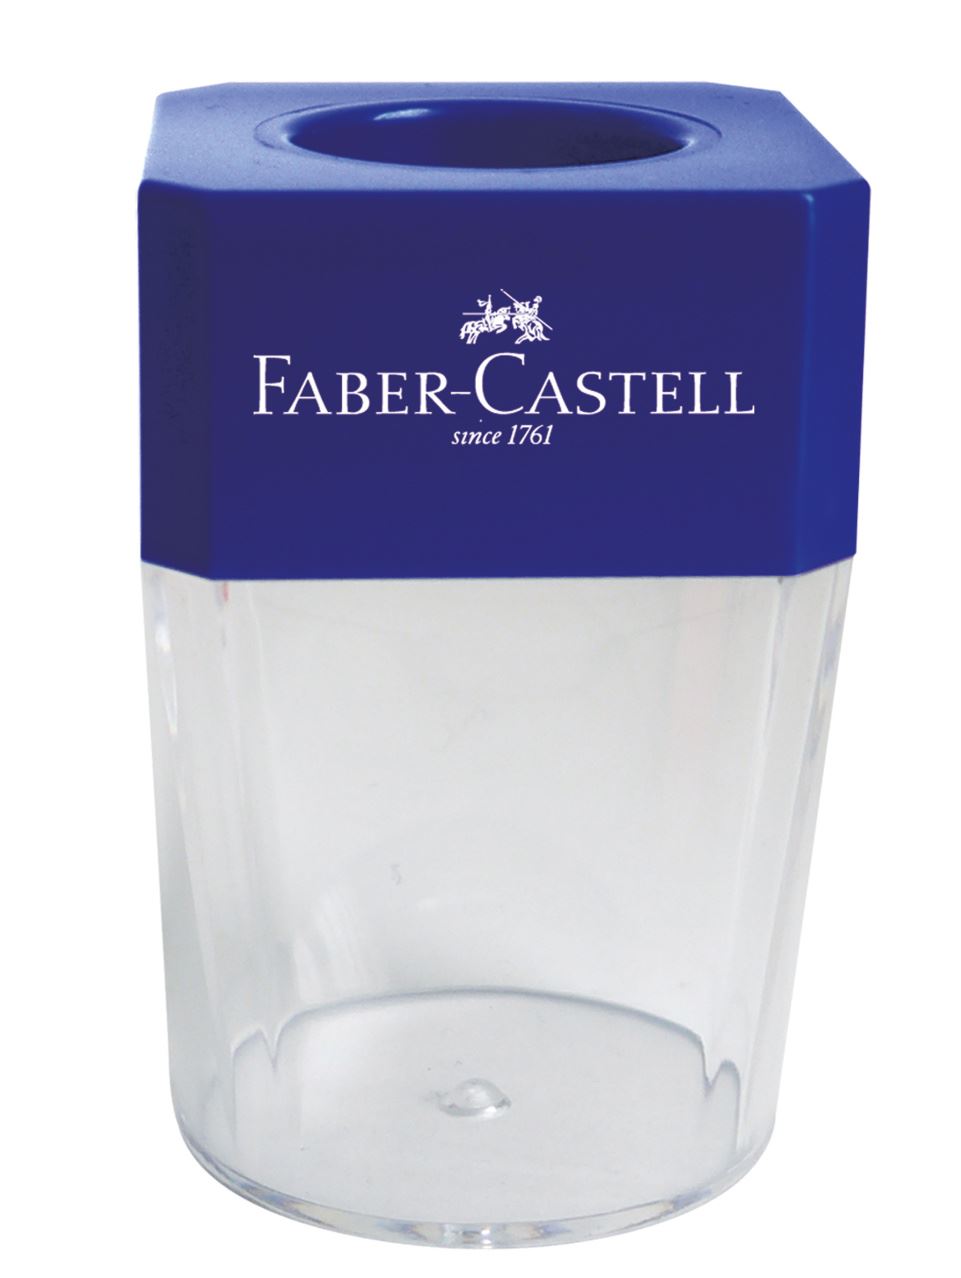 Faber-Castell - Portaclip imantado CD-4203 azul